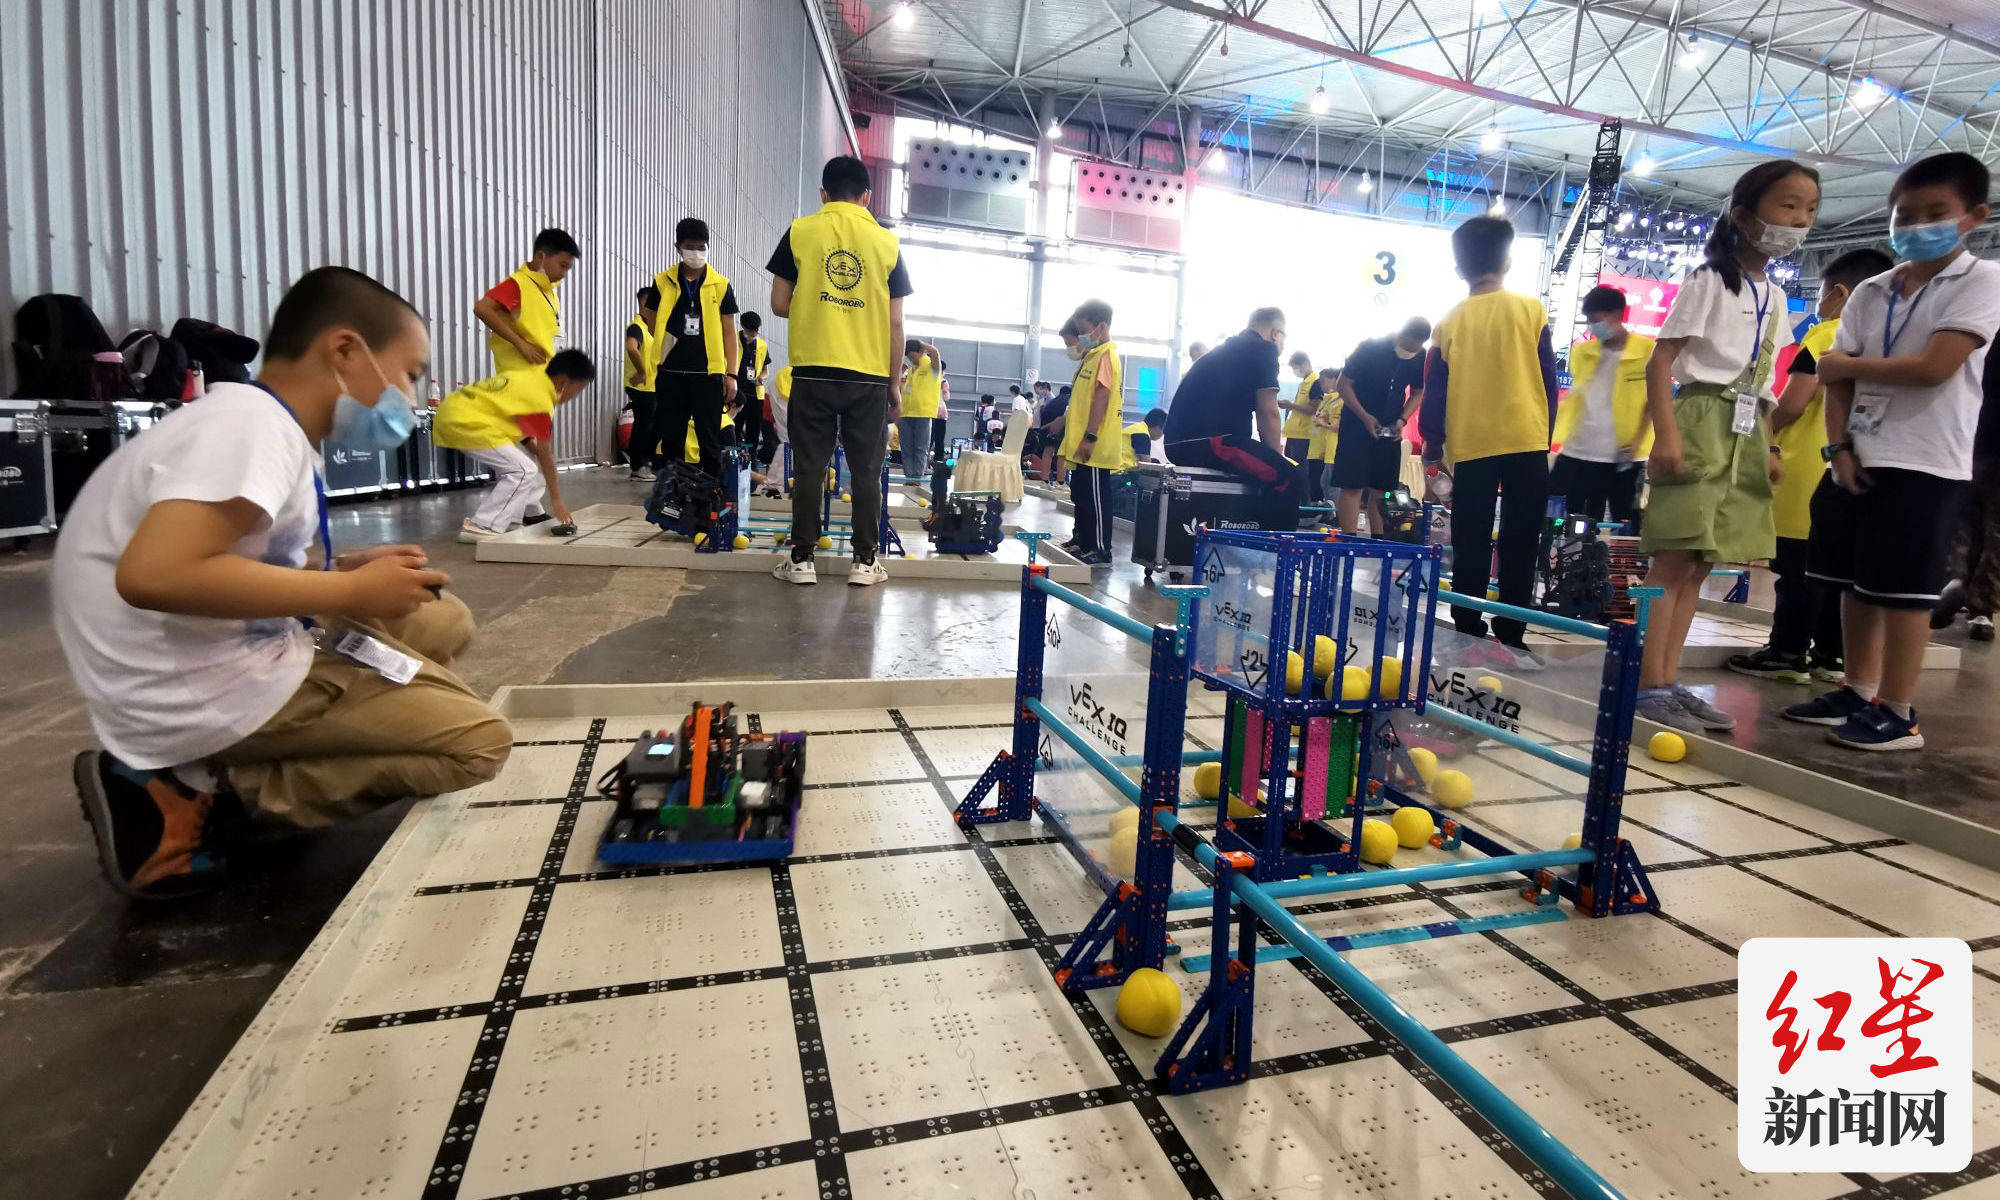 文化|VEX机器人成都西区赛开赛 IGS博览会上演“铁甲大战”